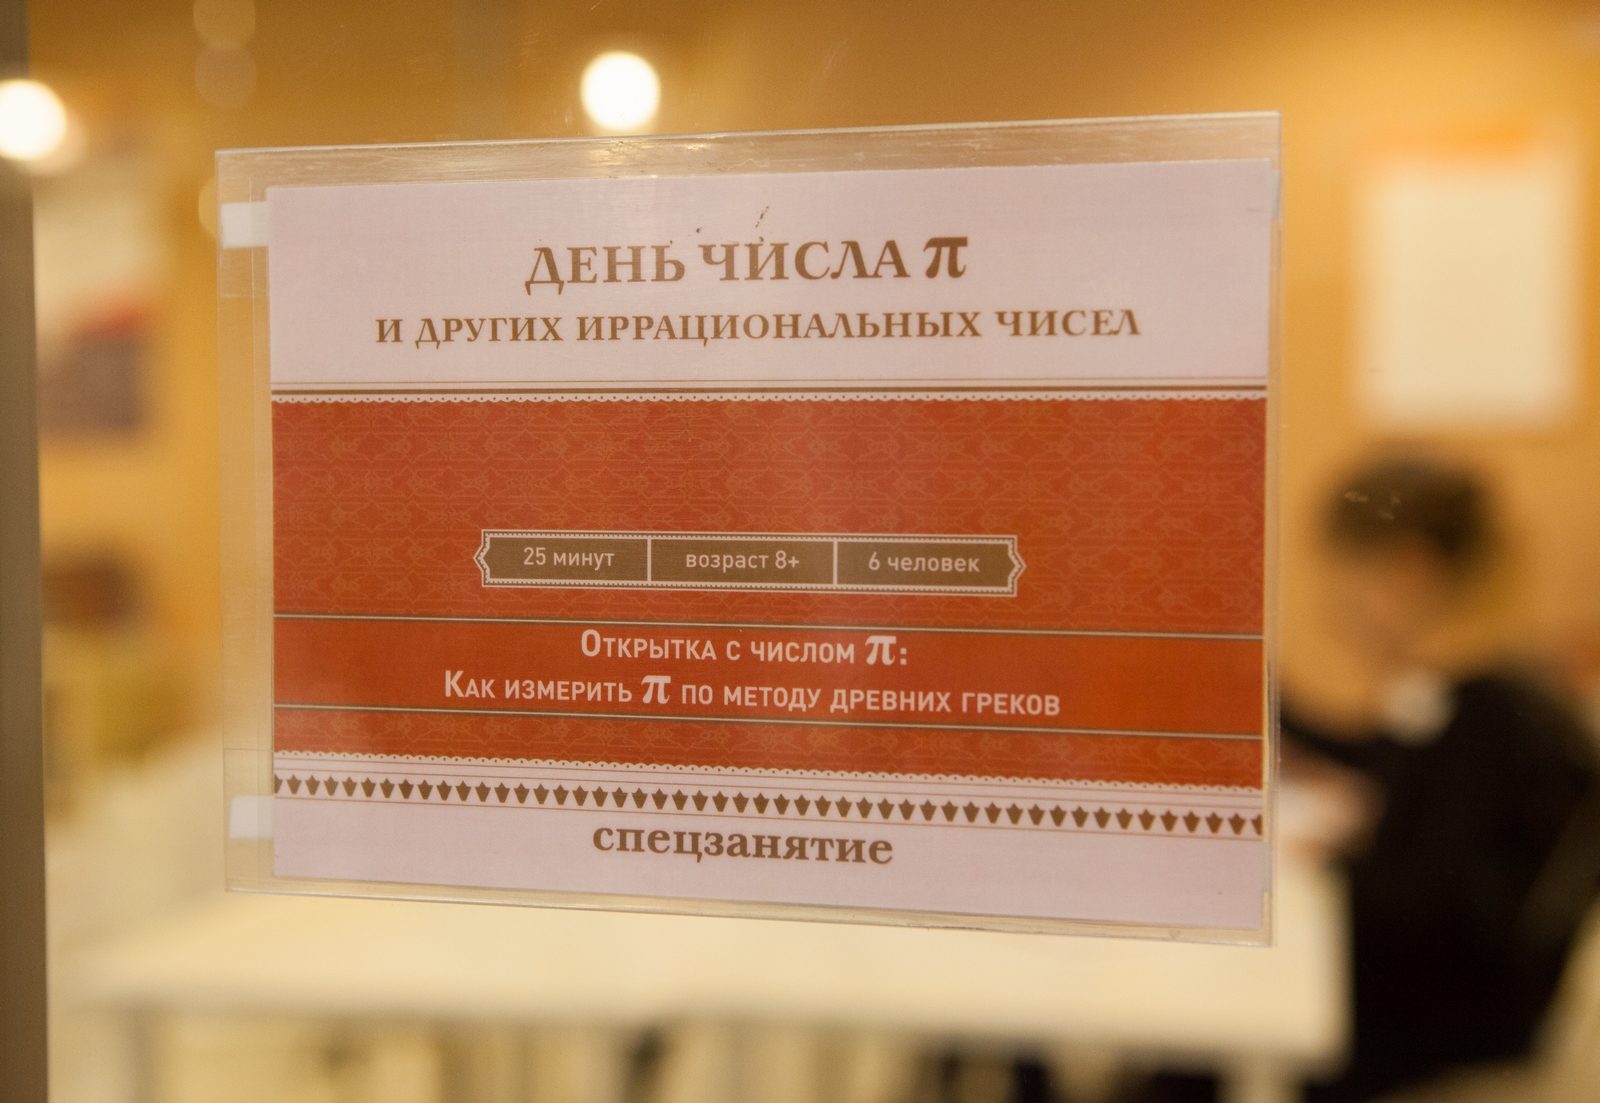 Программа празднования Дня числа пи в «Мастерславле» – события на сайте «Московские Сезоны»